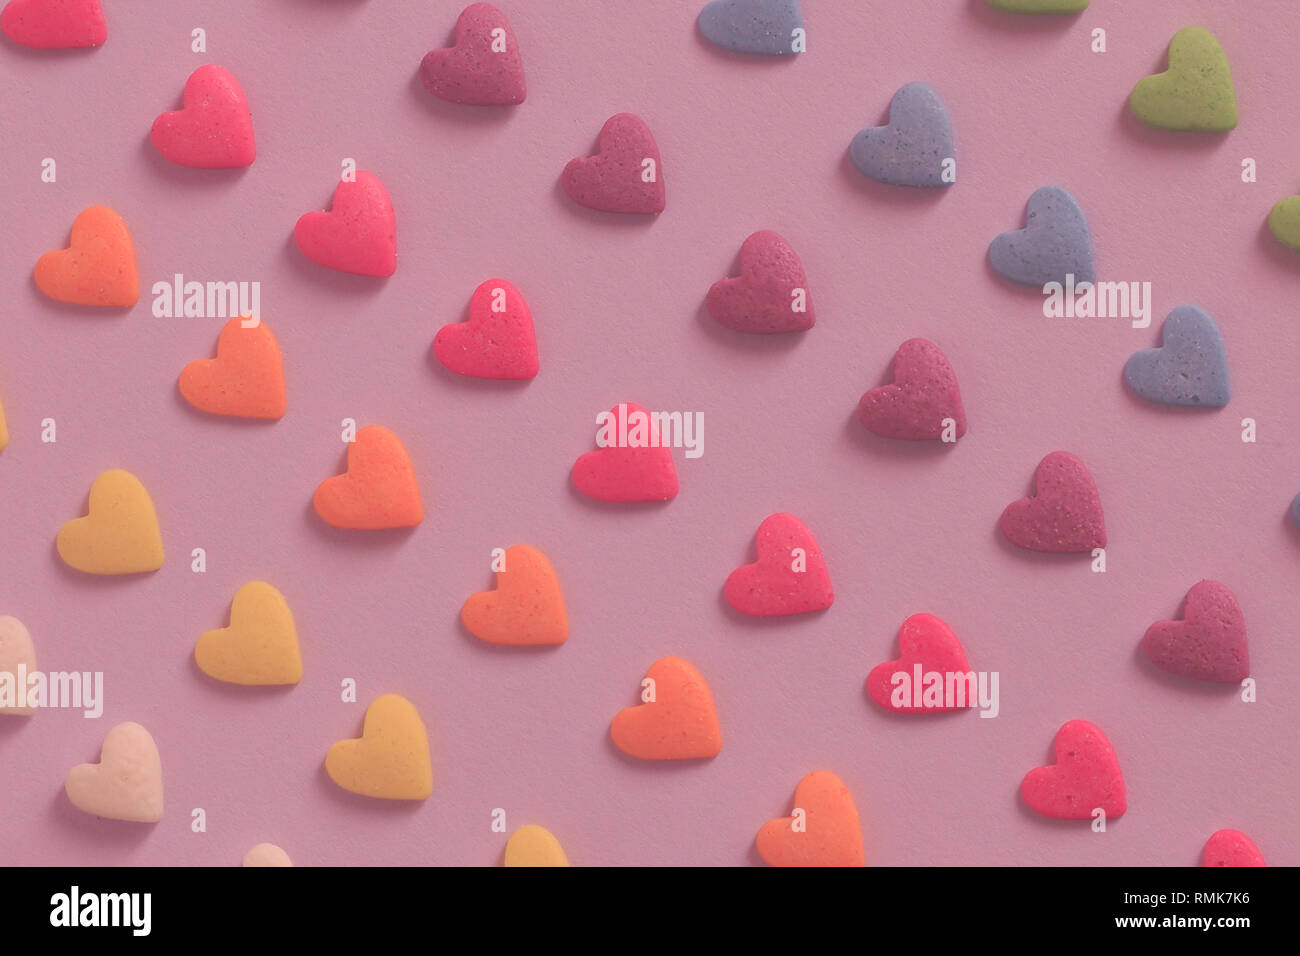 Fond en forme de coeur coloré à motif de bonbons Banque D'Images